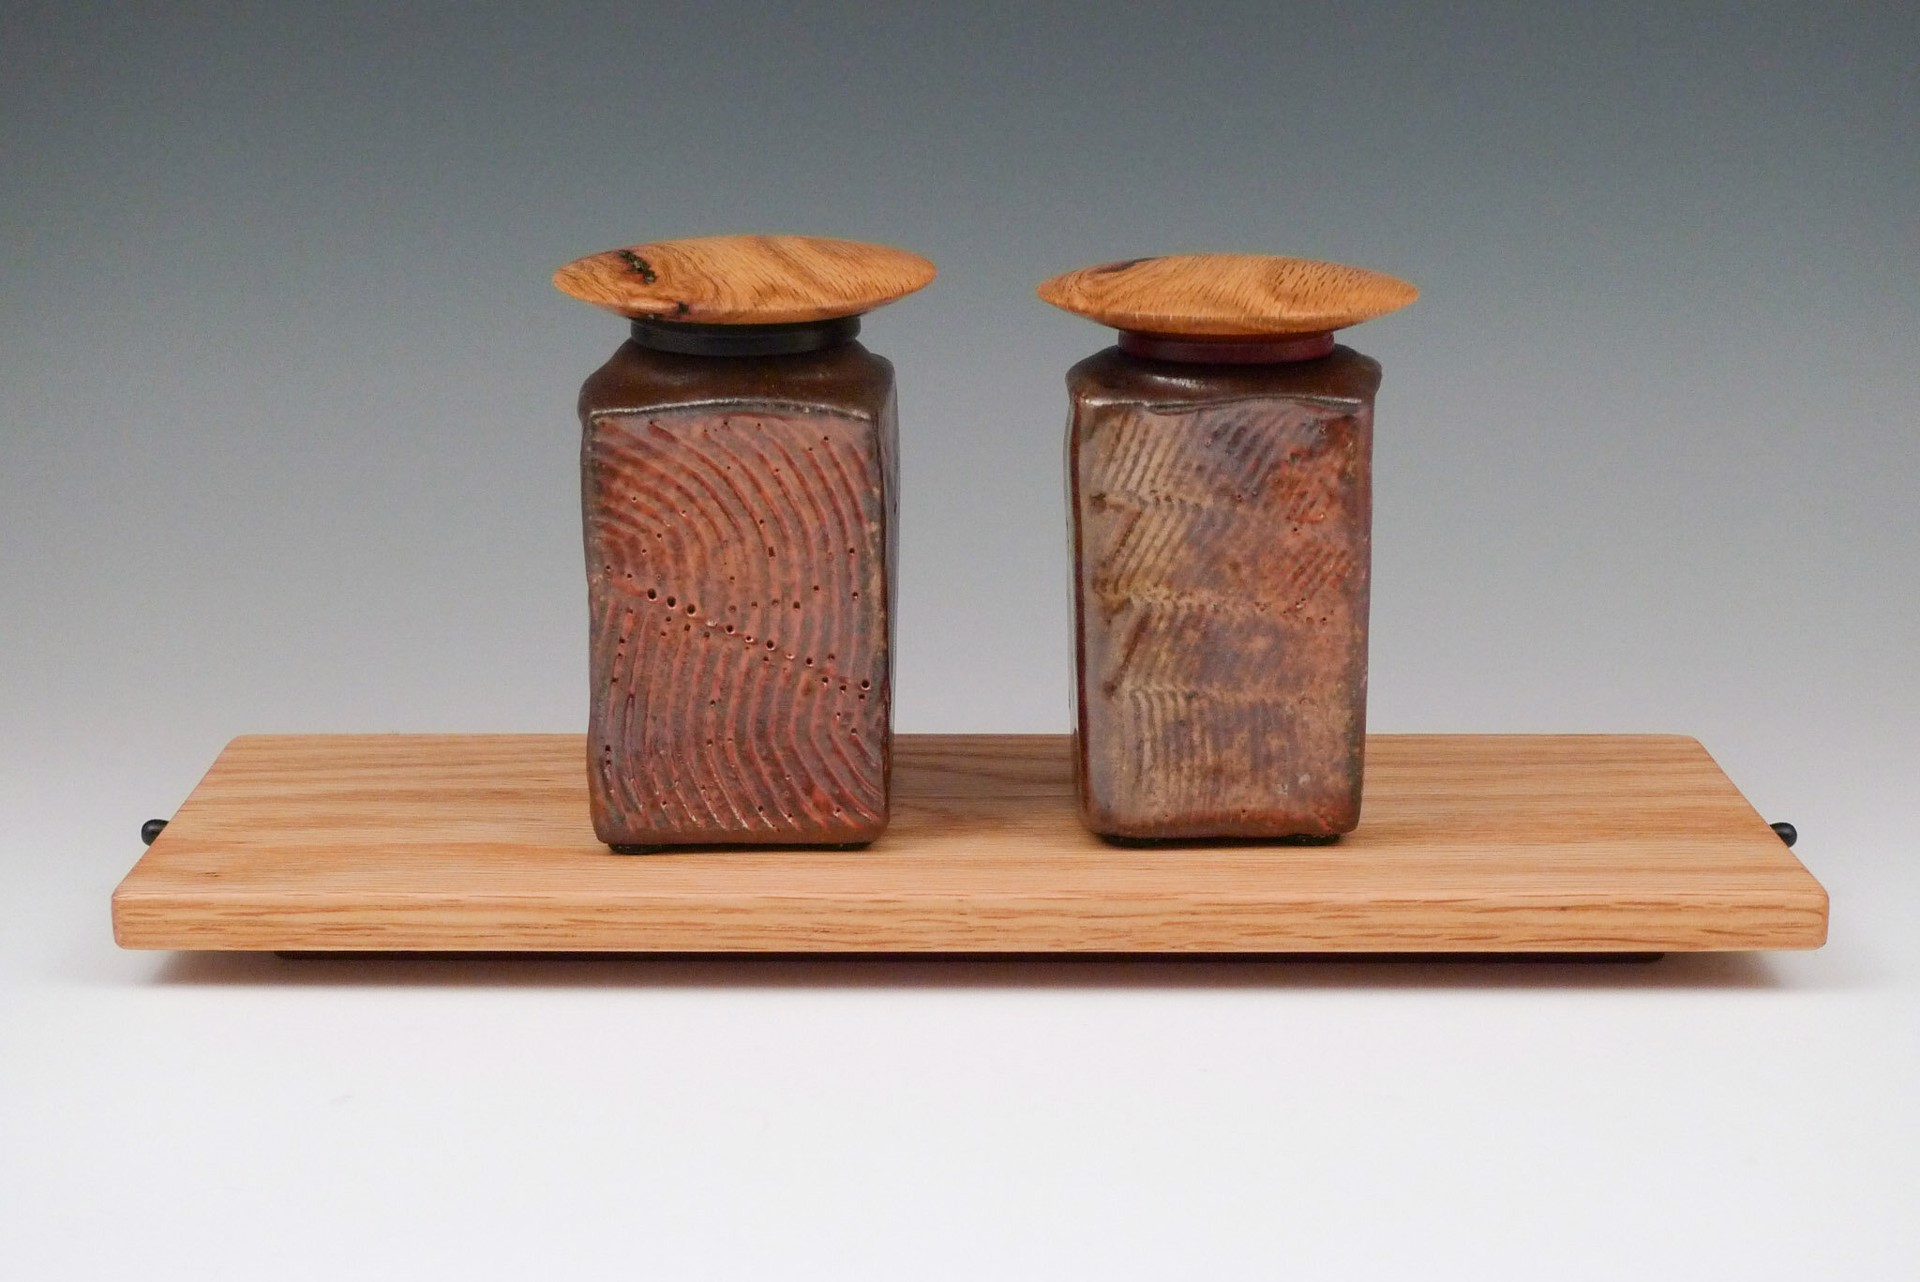 Tea Brick Pair with Winged Lid by Reid Schoonover